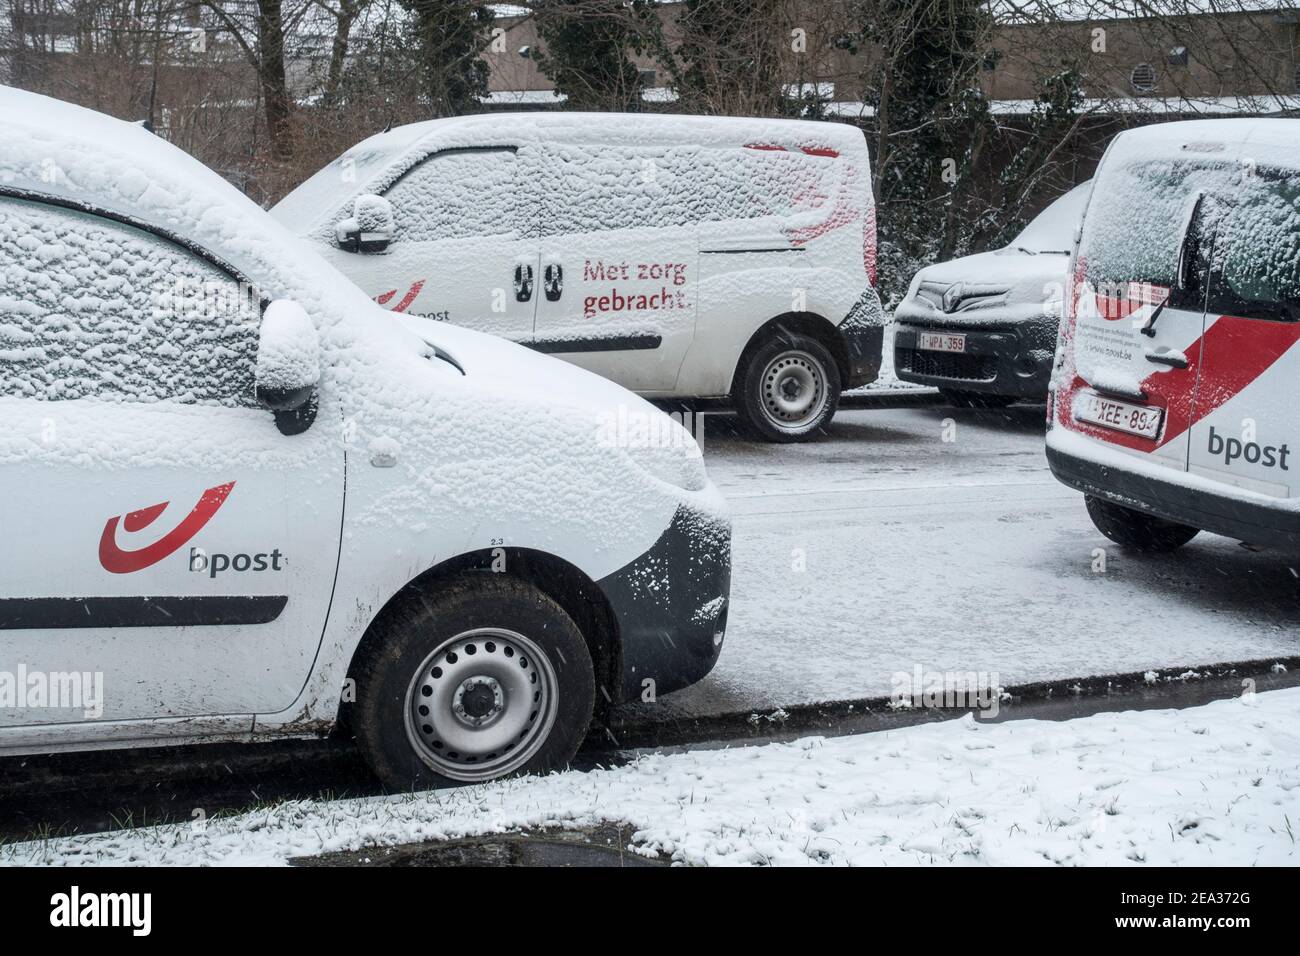 Pare-brise / pare-vent de voiture des véhicules de livraison de poste de poste de Belge garés couverts de neige pendant le temps froid en hiver, Belgique Banque D'Images